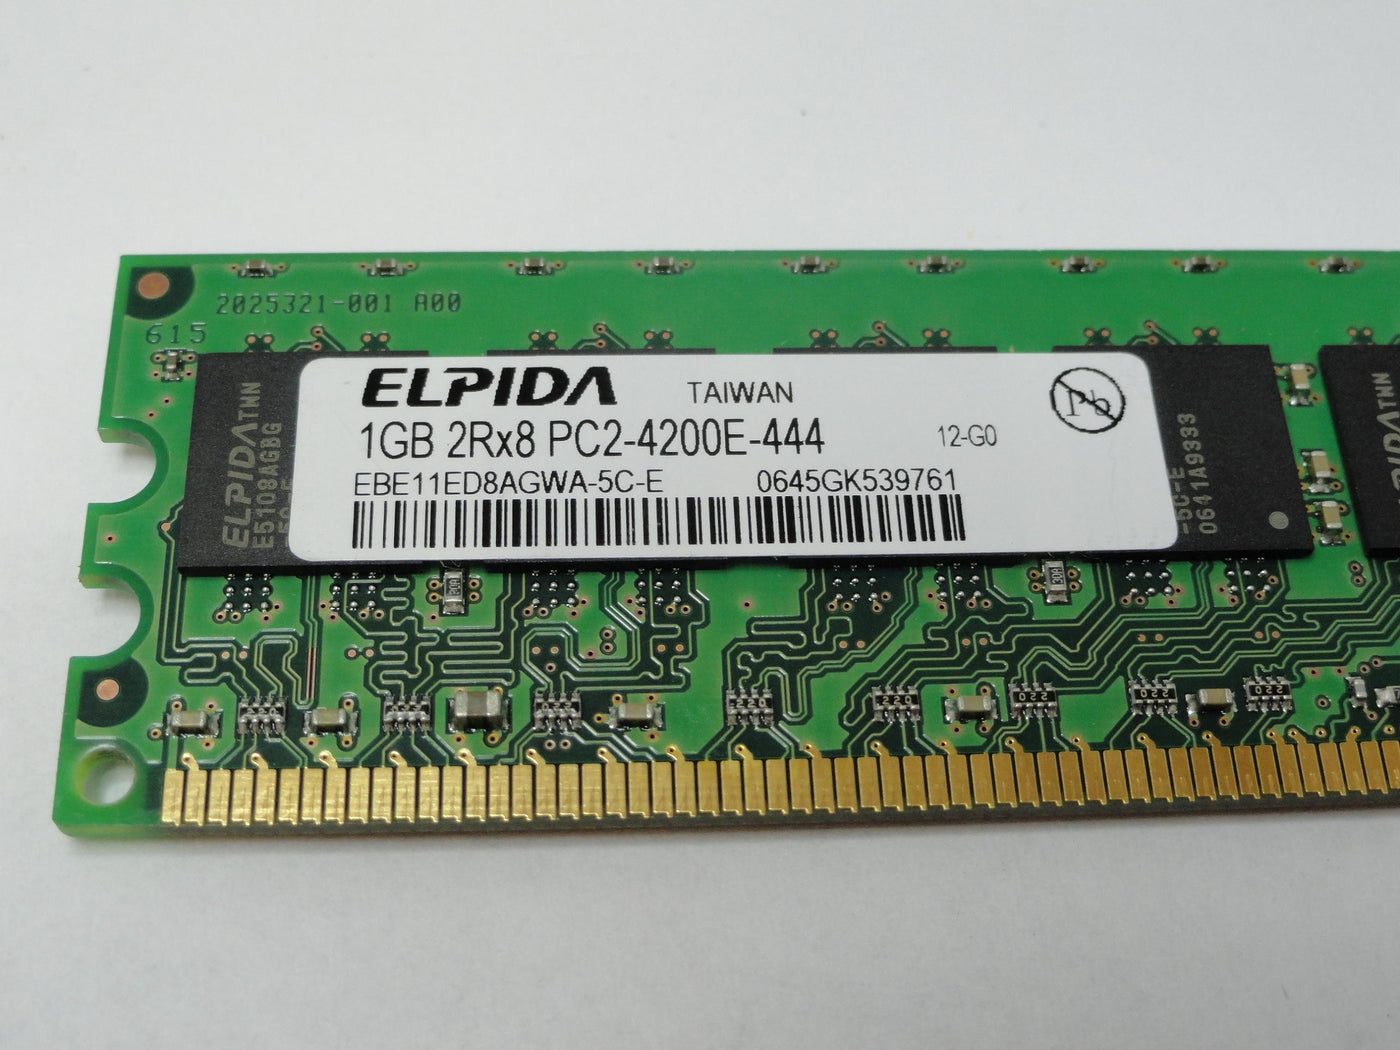 PC2-4200E-444 - Elpida 1GB 240p PC2-4200 CL4 18c 64x8 DDR2-533 2Rx8 1.8V ECC DIMM memory module - Refurbished